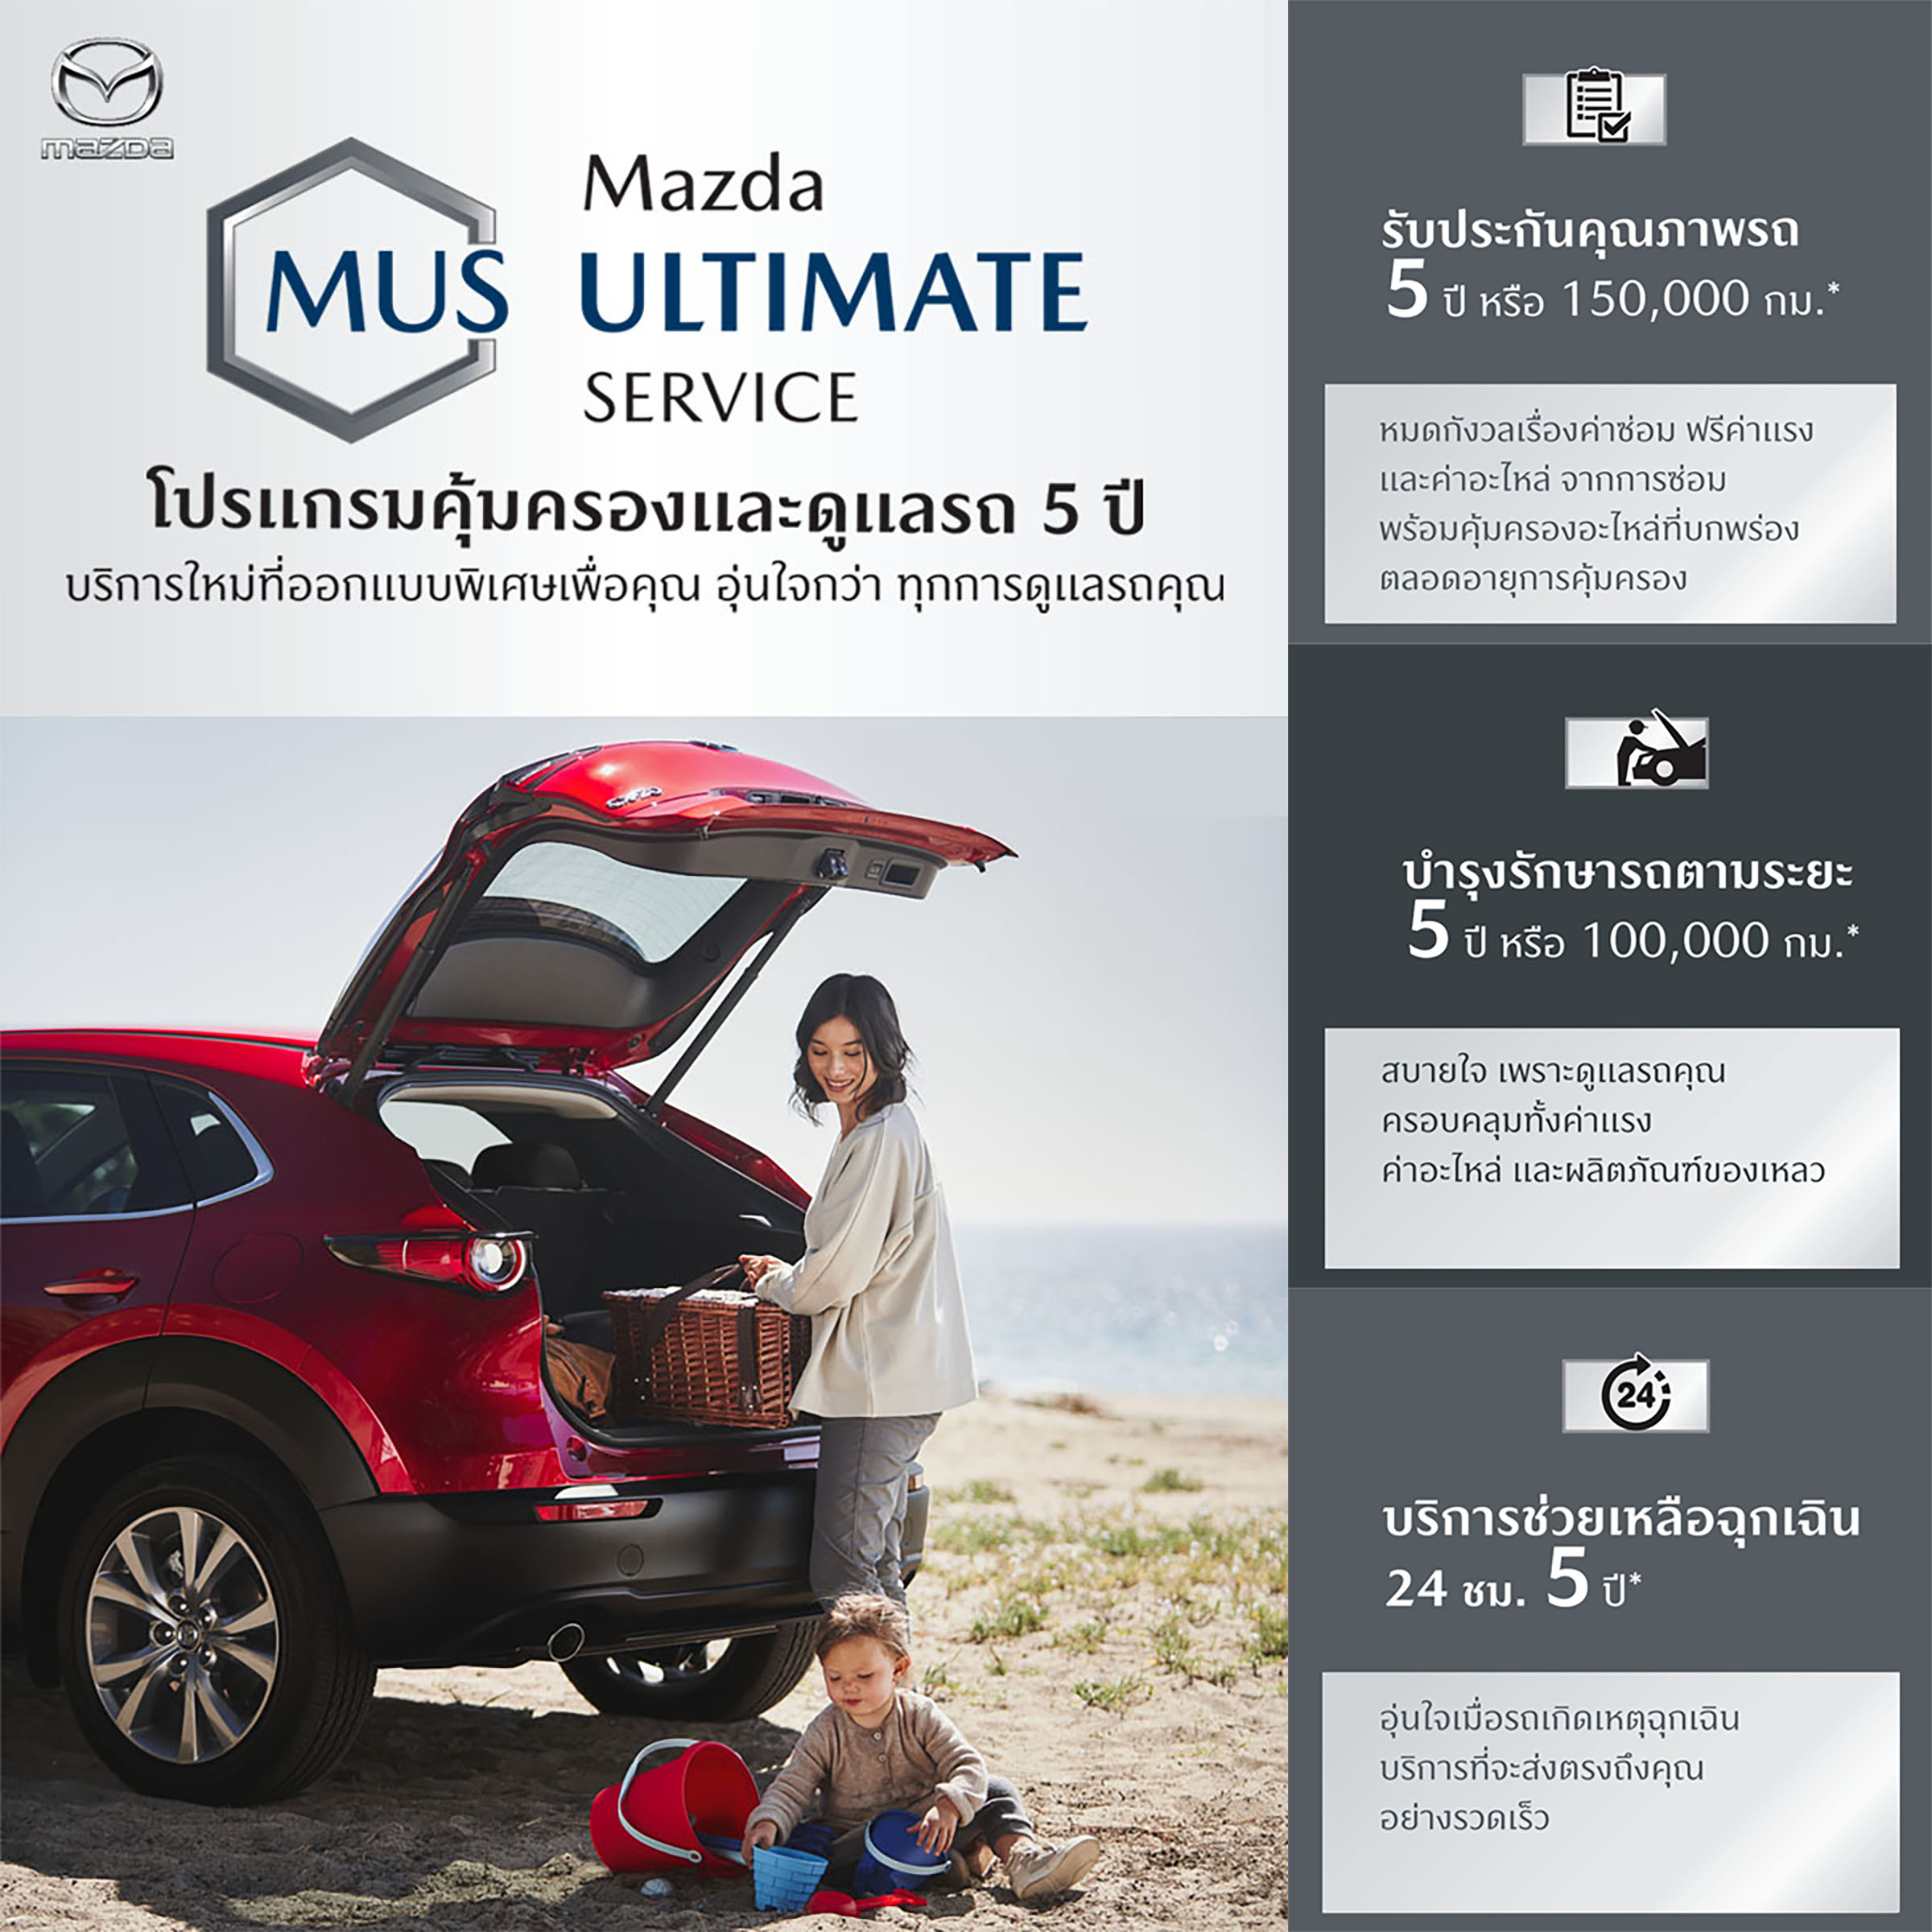 โปรแกรม MAZDA ULTIMATE SERVICE ดูแลฟรีตลอด 5 ปี พร้อมเปิดตัวแพล็ตฟอร์ม CPO MARKETPLACE ซื้อขายรถมาสด้ามือสองออนไลน์